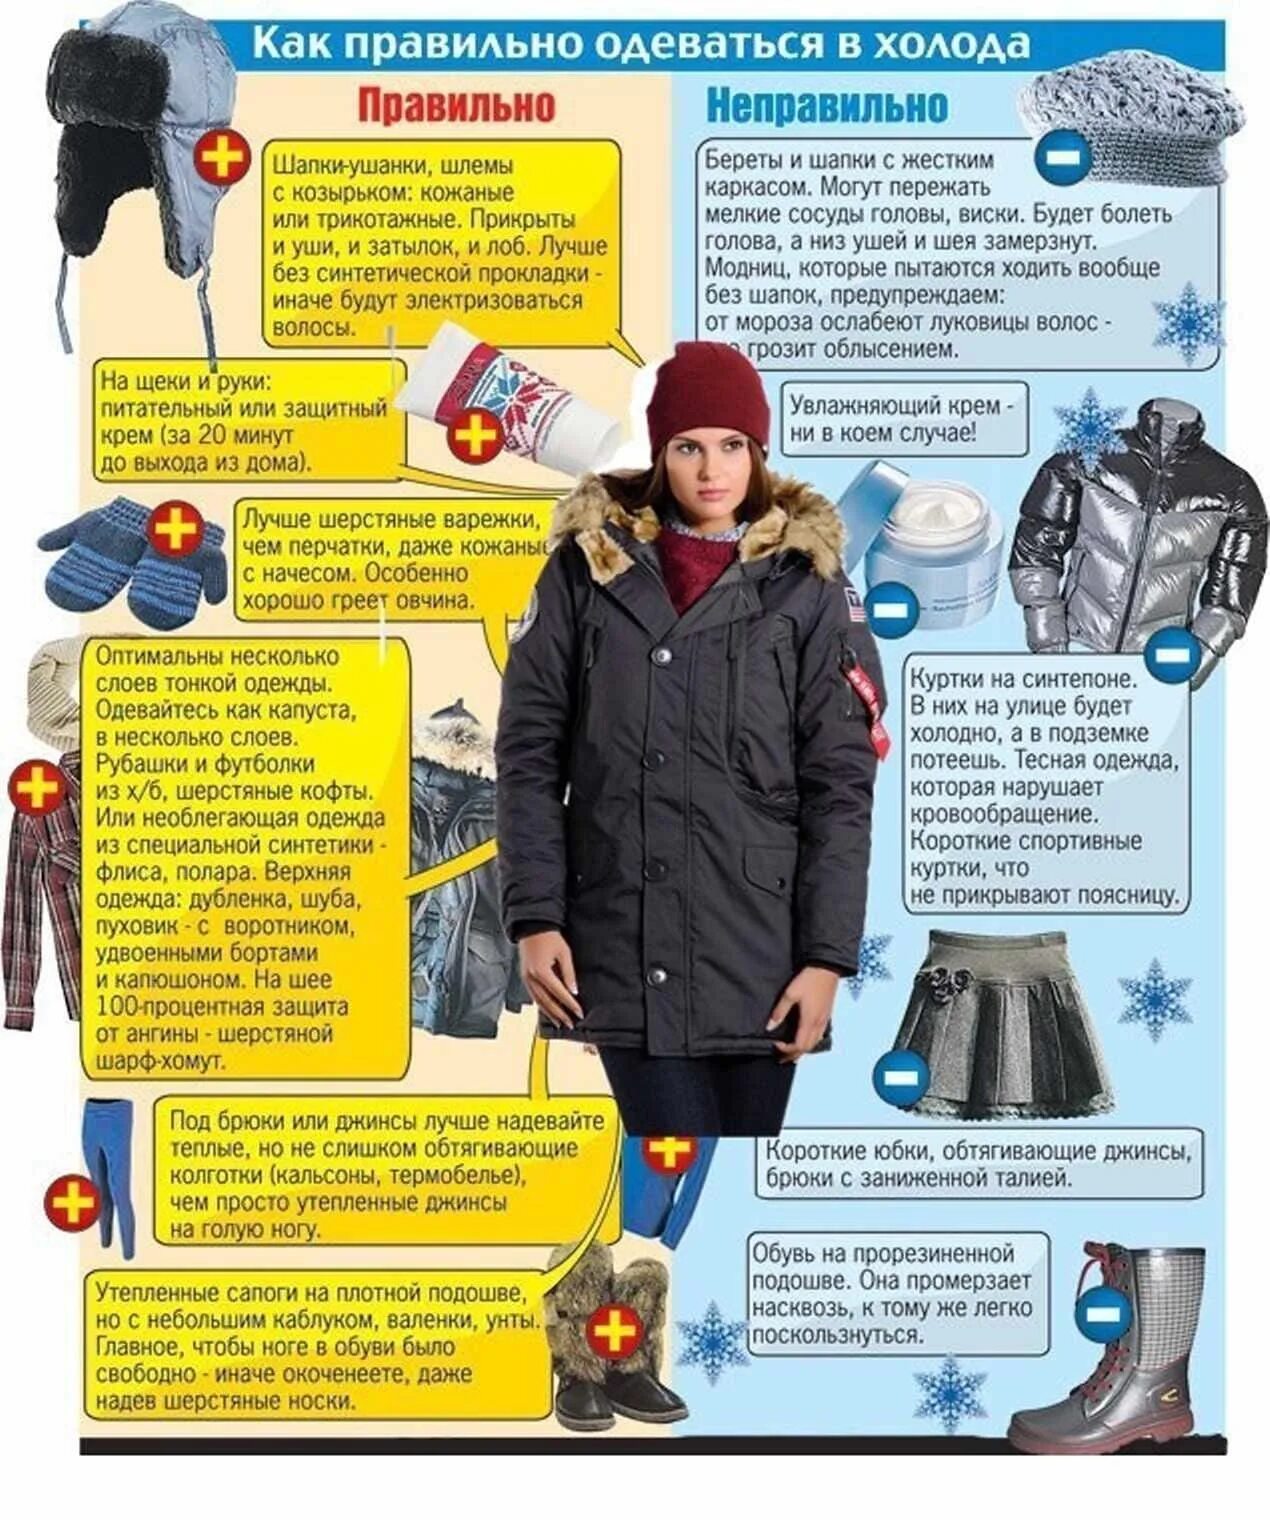 Что одеть в 5 градусов. Правильная одежда зимой. КВК правилтео одеватся. Как правильно одеваться зимой. Одеваться зимой в Мороз.